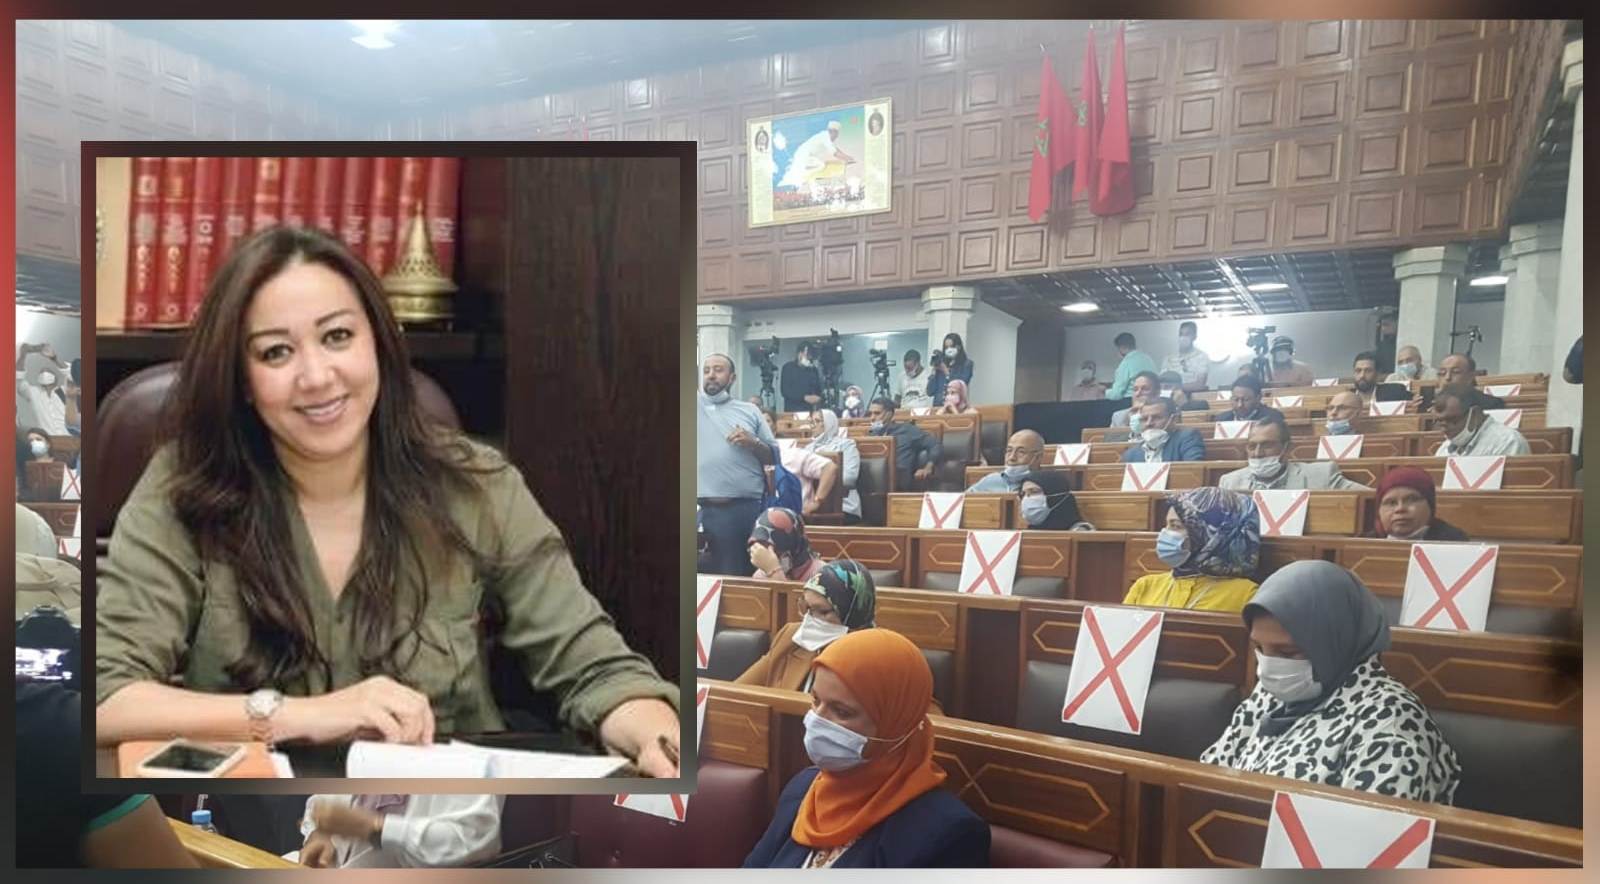 نبيلة ارميلي تفوز برئاسة مجلس مدينة البيضاء بحصولها على 105 صوتا